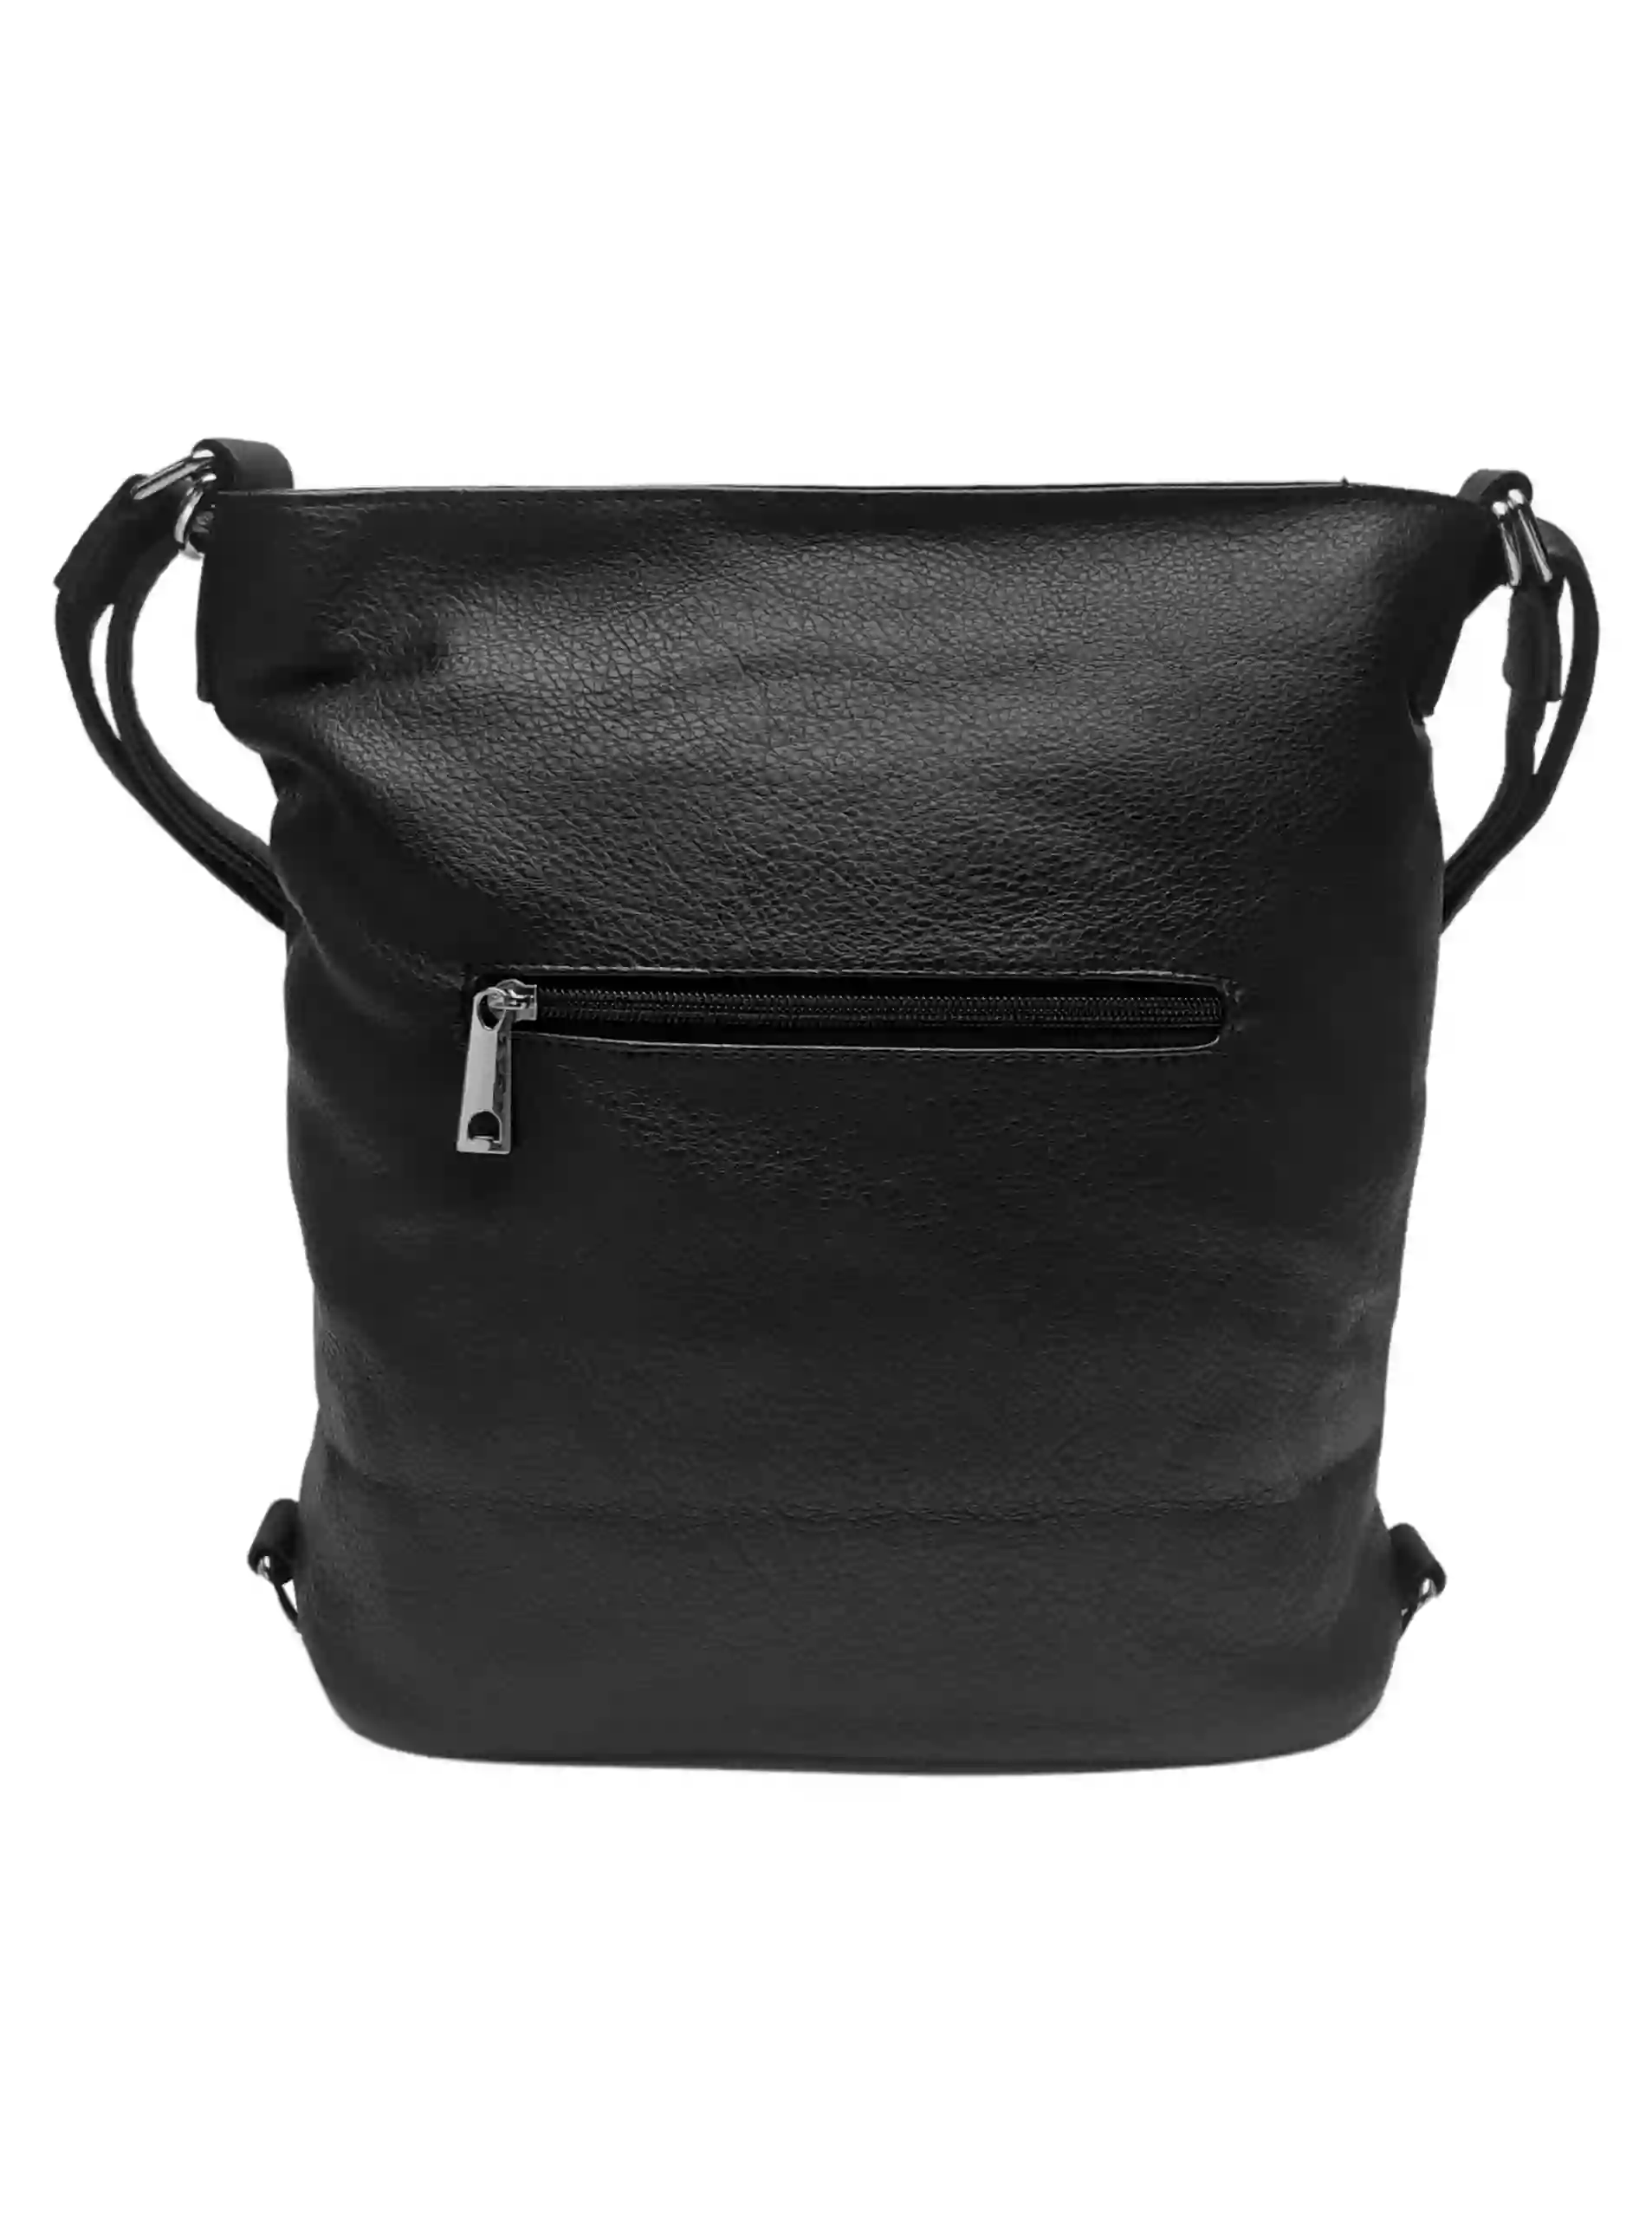 Střední černý kabelko-batoh 2v1 s třásněmi, Bella Belly, 5394, zadní strana kabelko-batohu